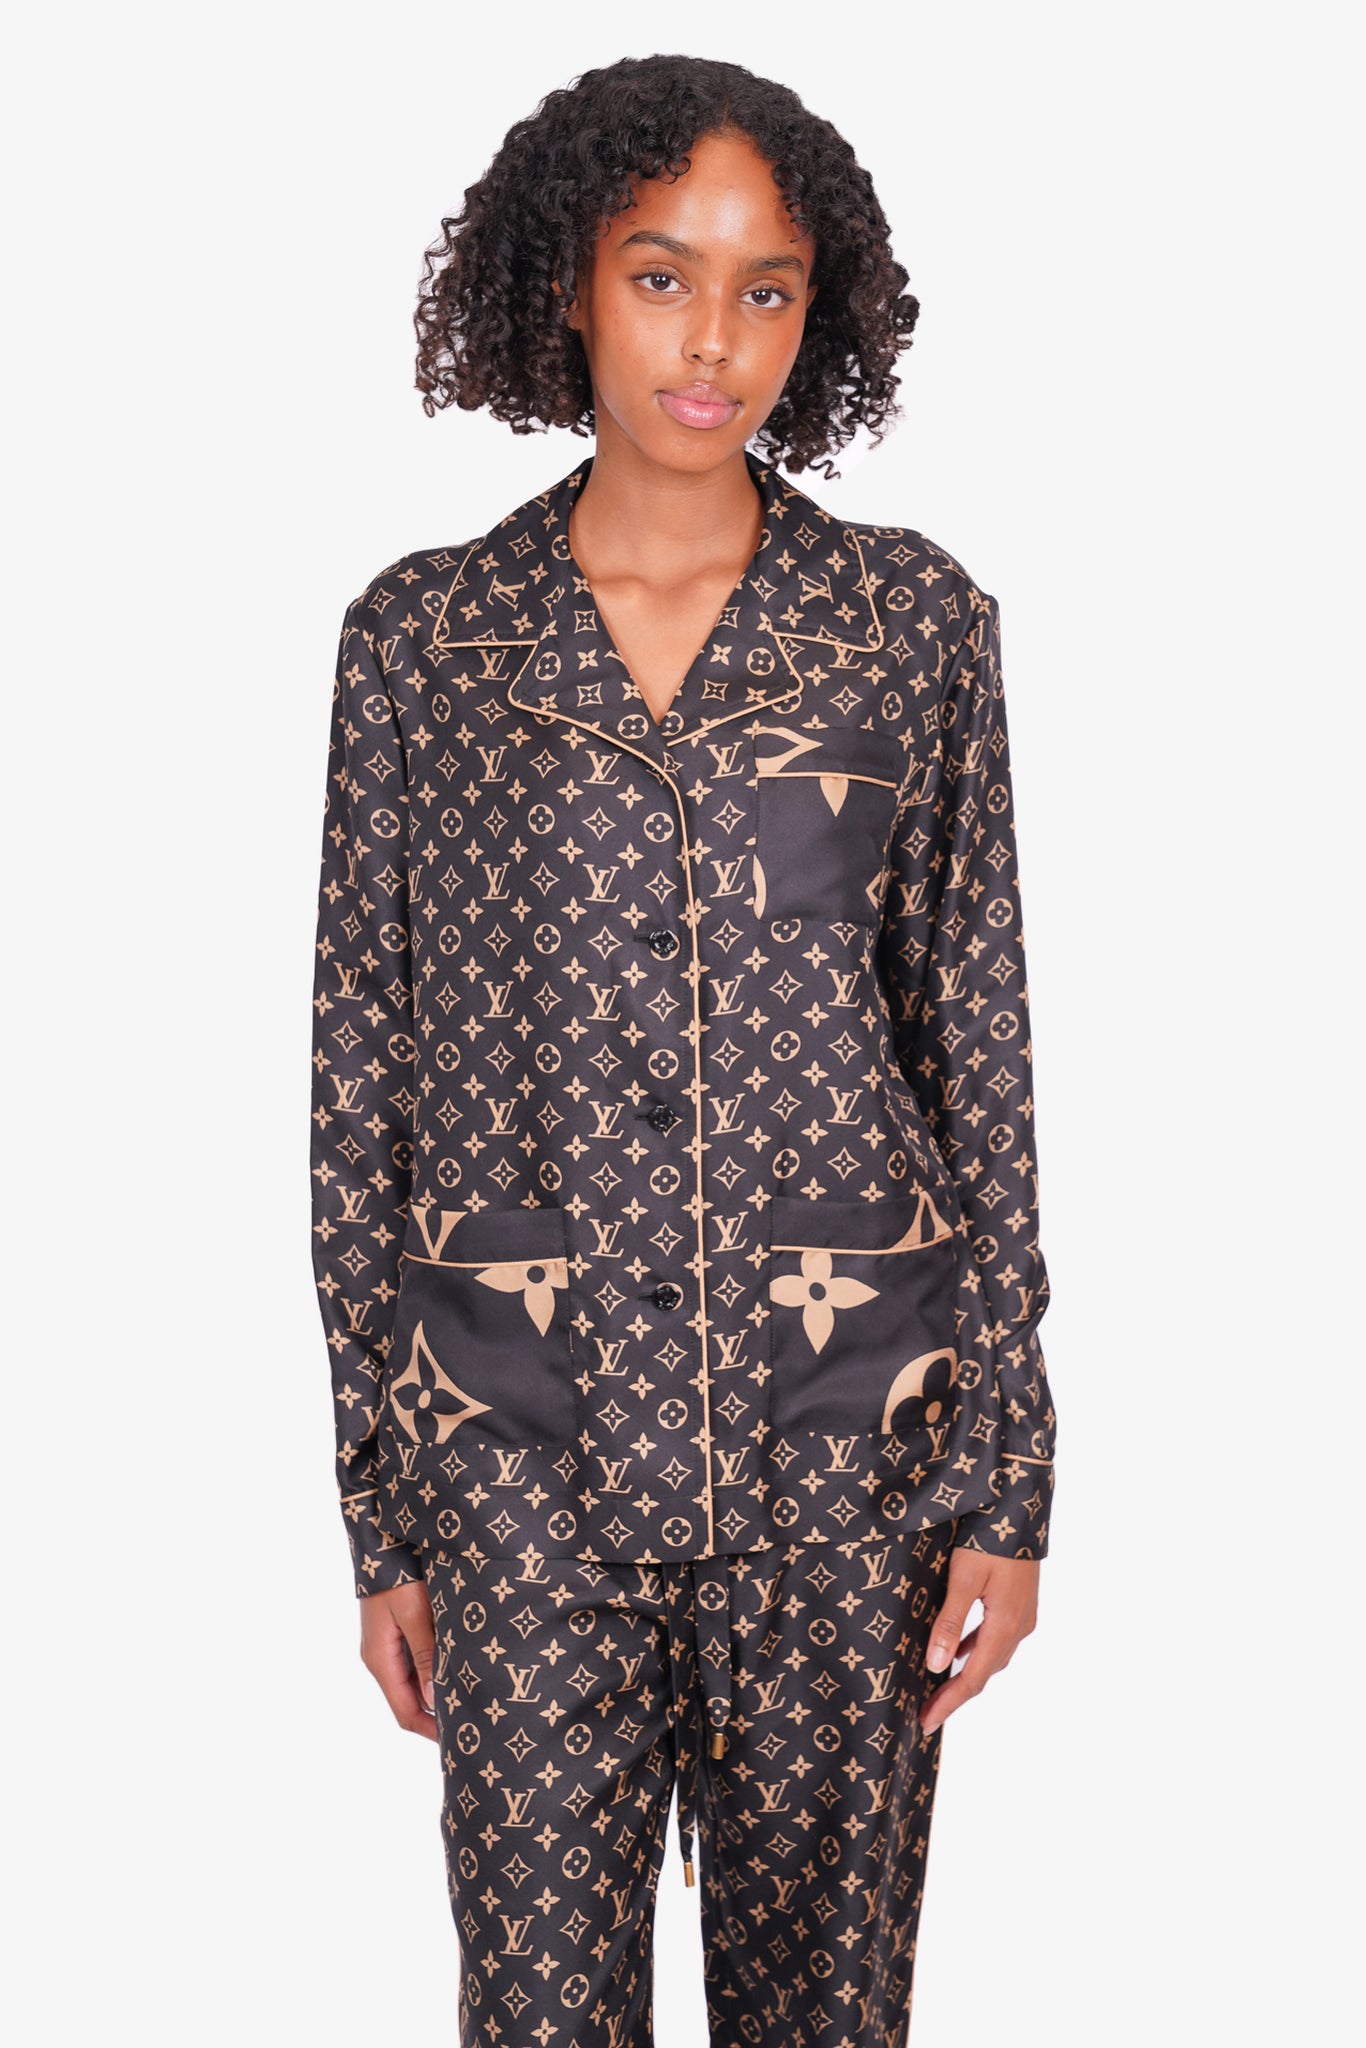 Louis Vuitton 2021 Pajama Monogram Lurex Jacquard Pants Black